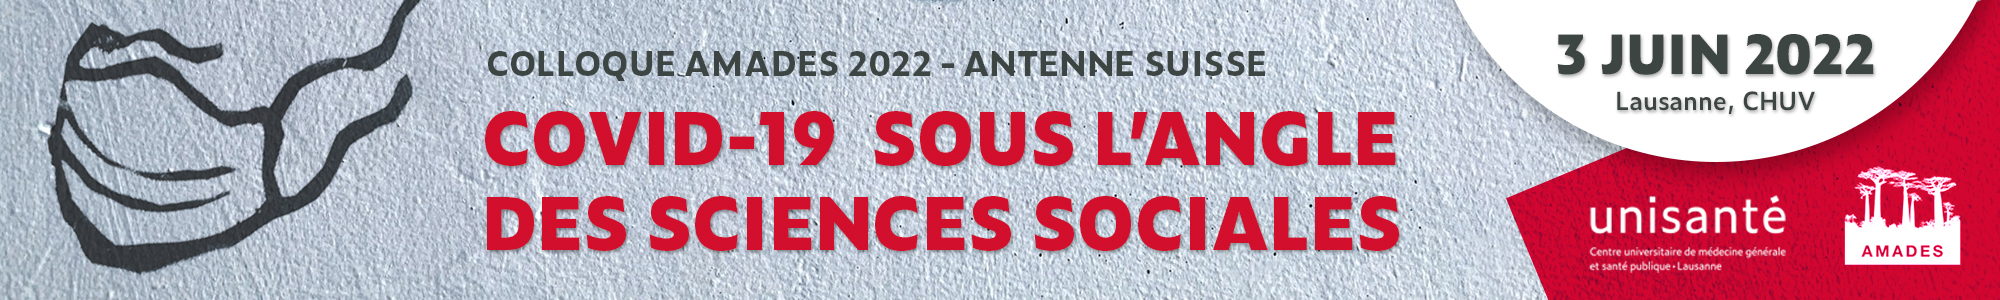 Colloque AMADES du 3 juin 2022